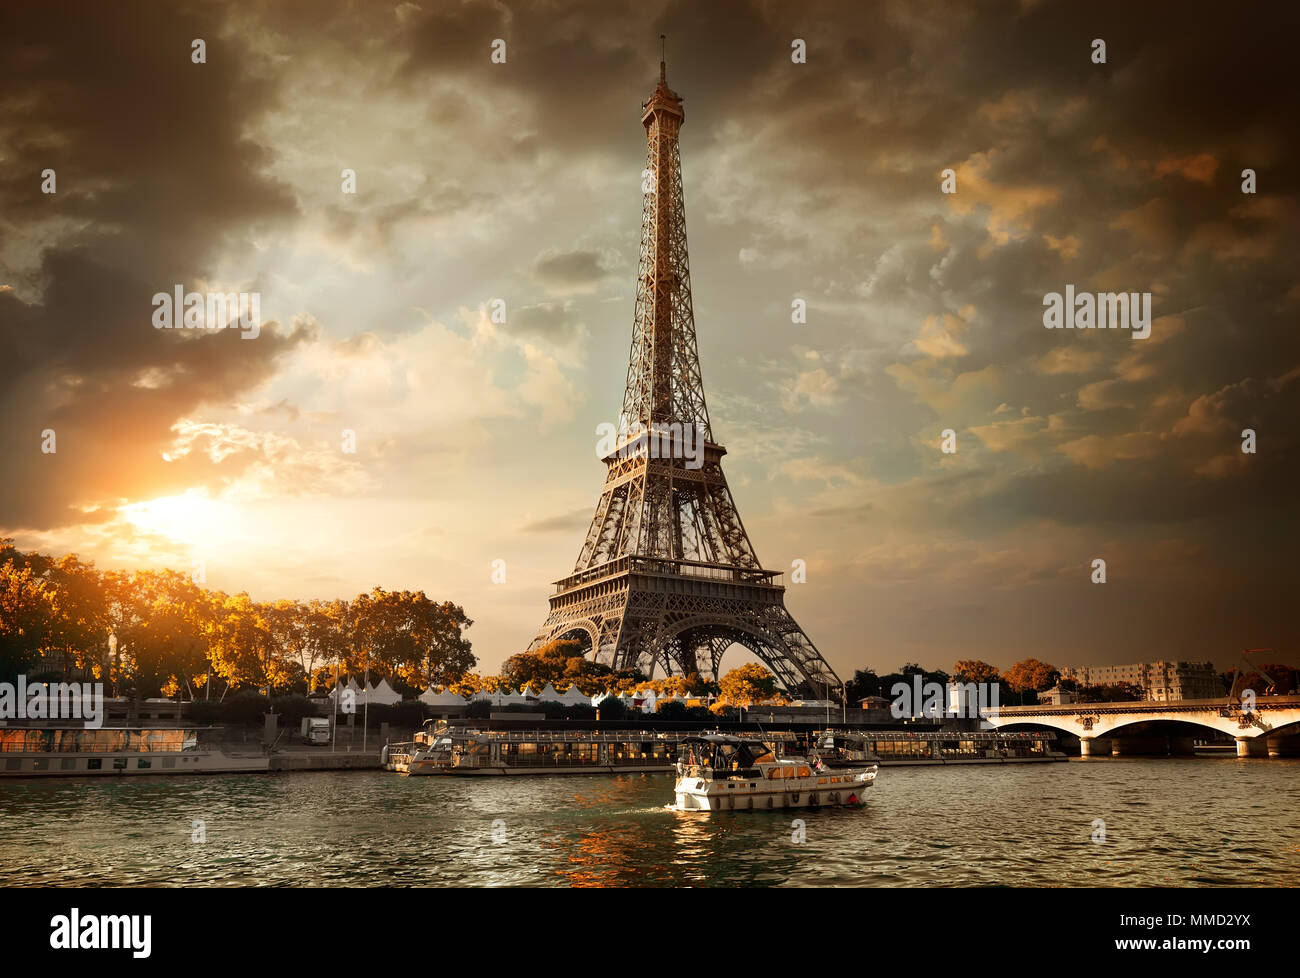 La Tour Eiffel et le pont Iena sur la Seine à Paris, France. Banque D'Images